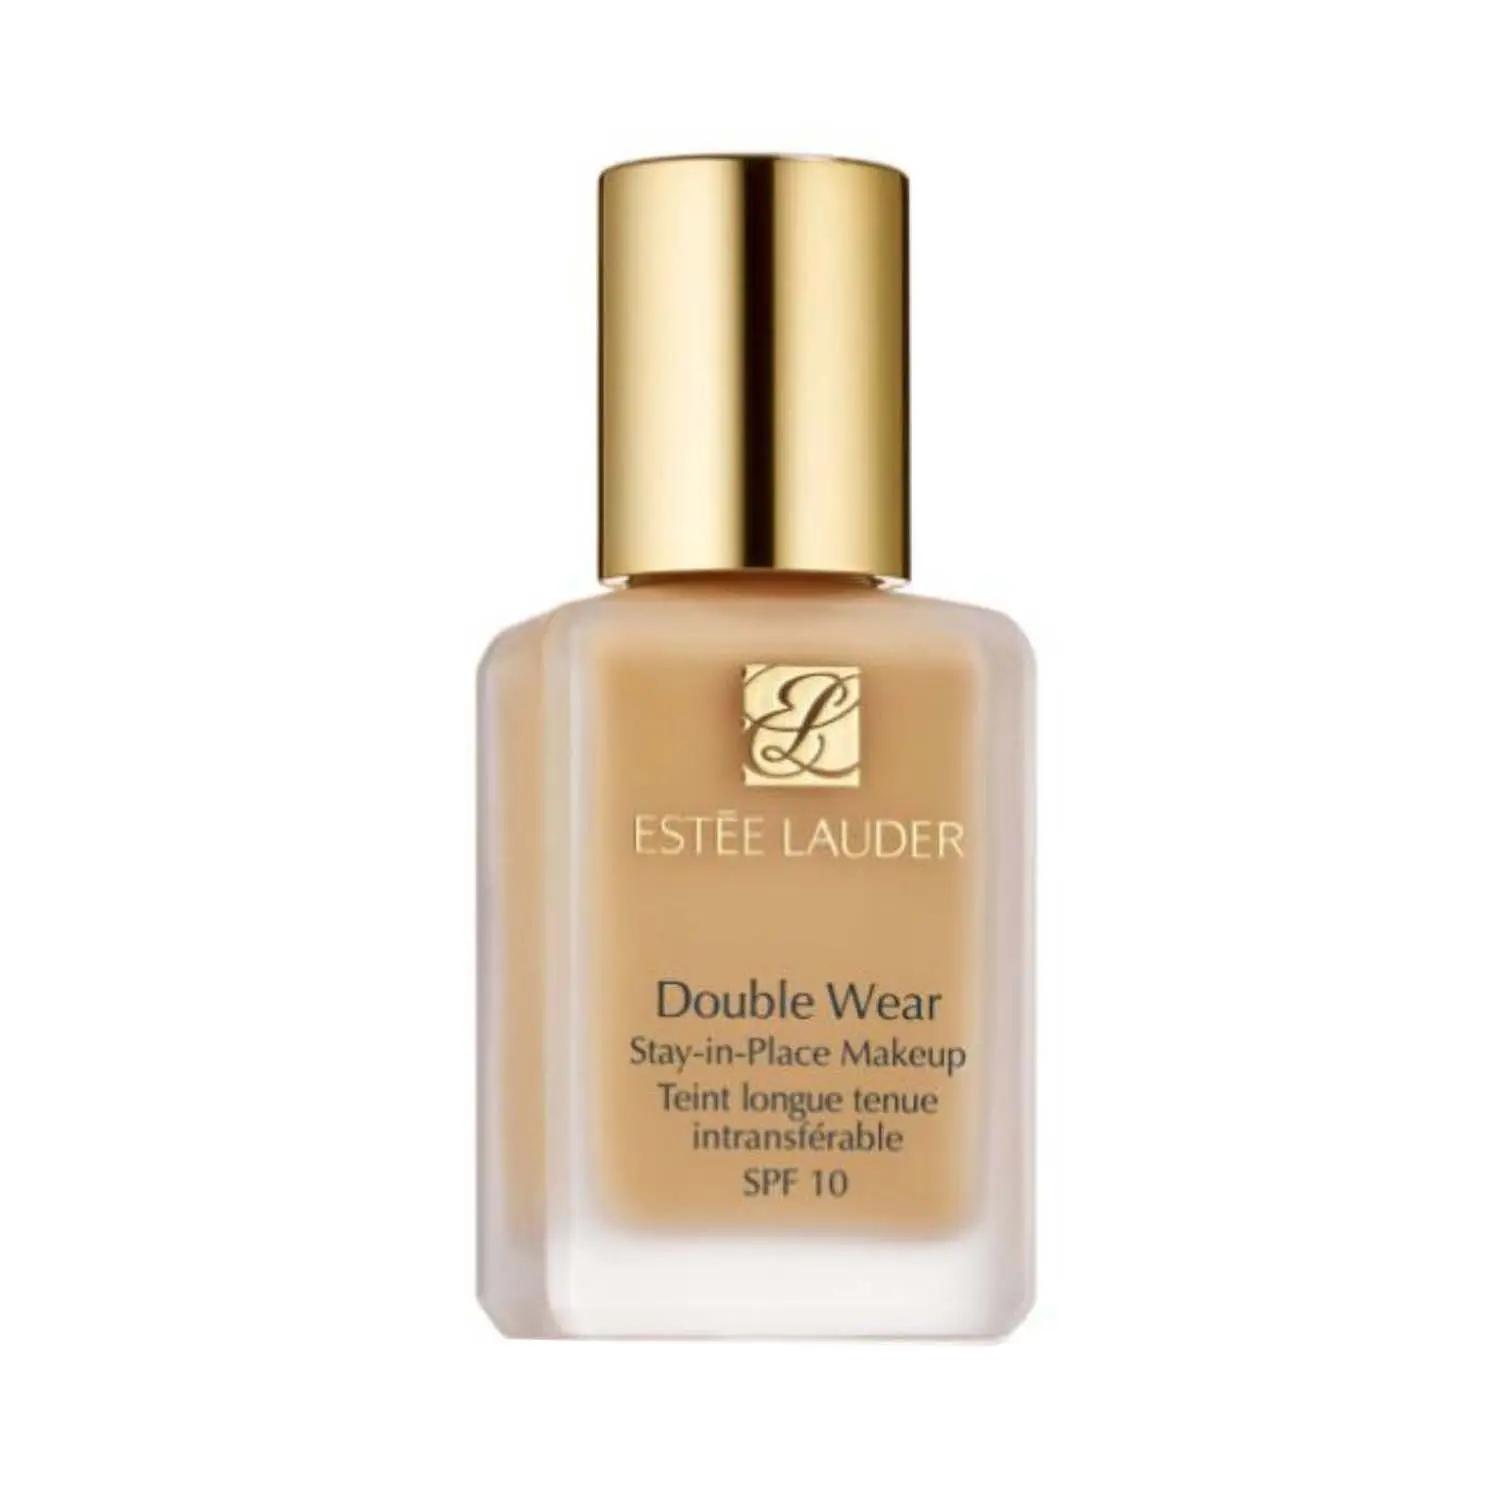 estee lauder double wear stay-in-place makeup foundation spf 10 - 2n1 desert beige (30ml)